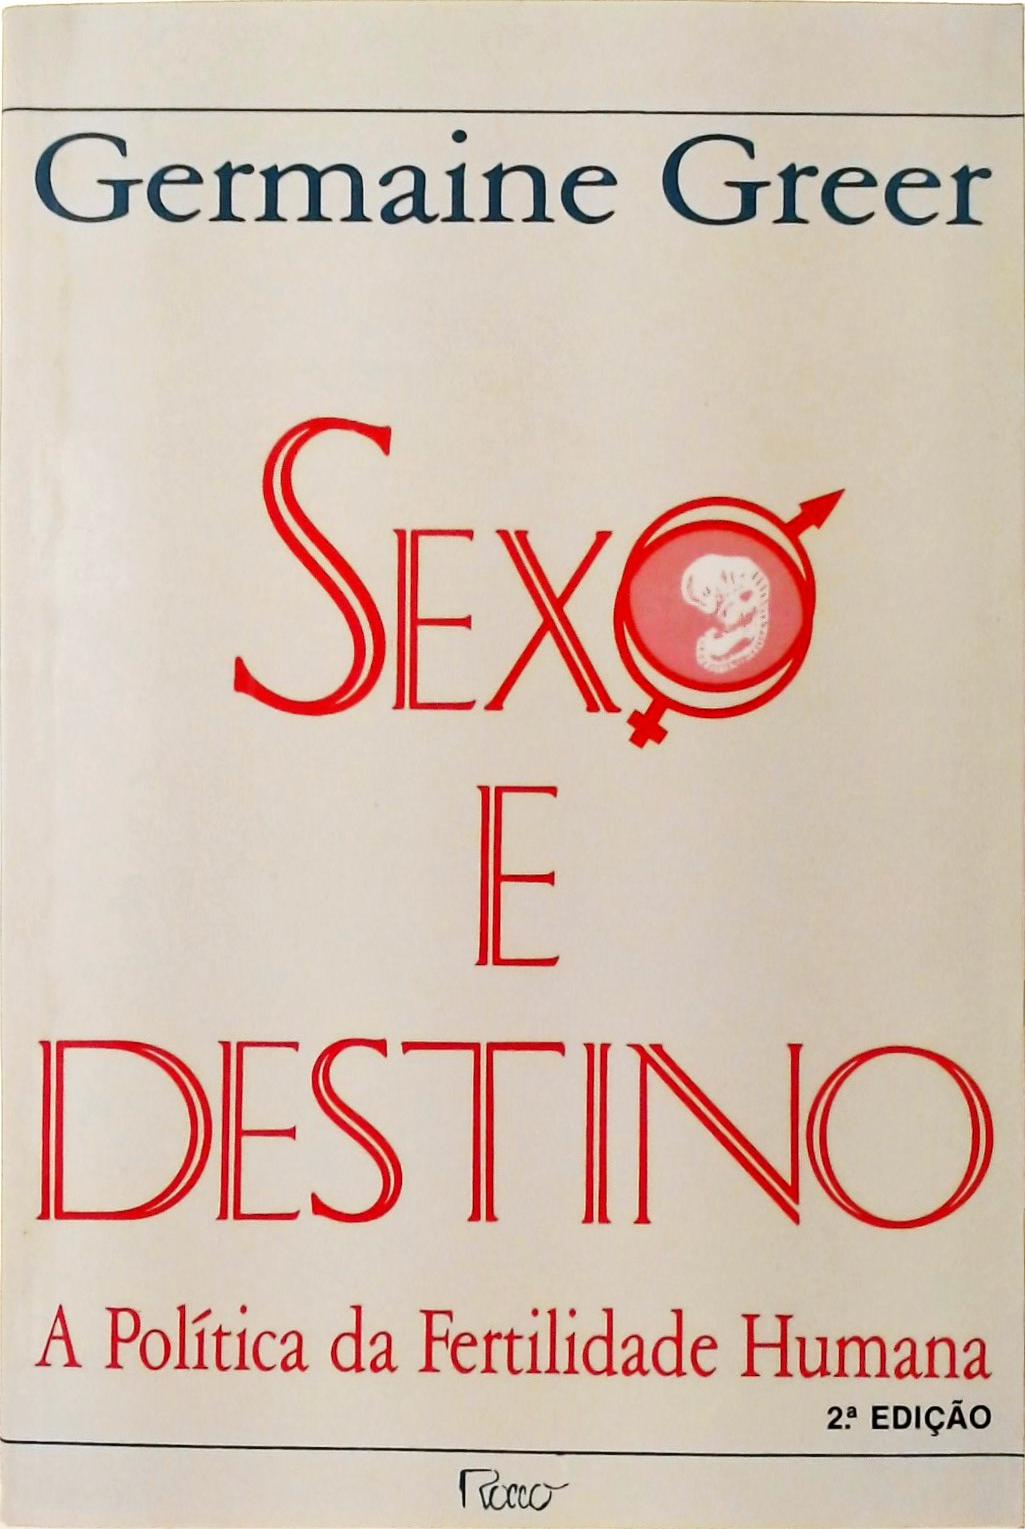 Sexo E Destino